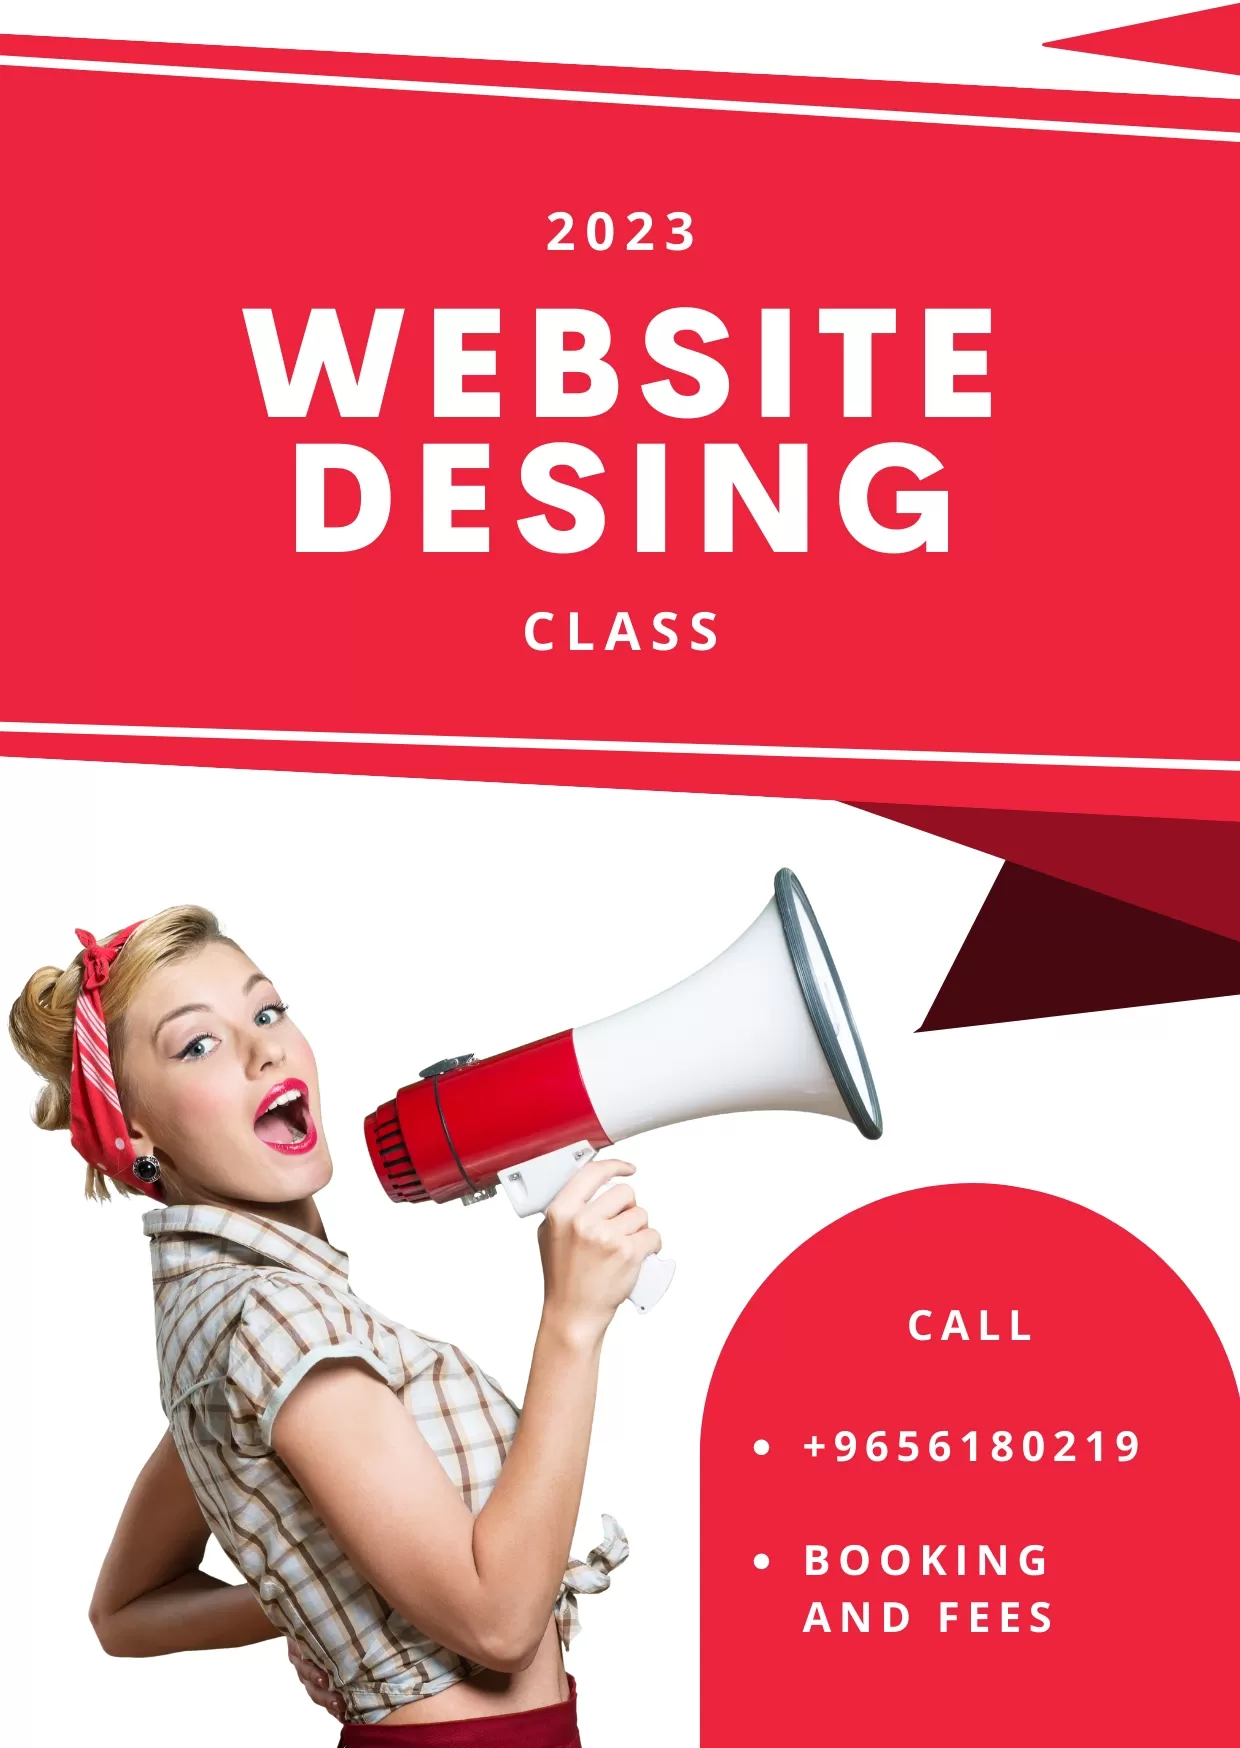 website design class 2023